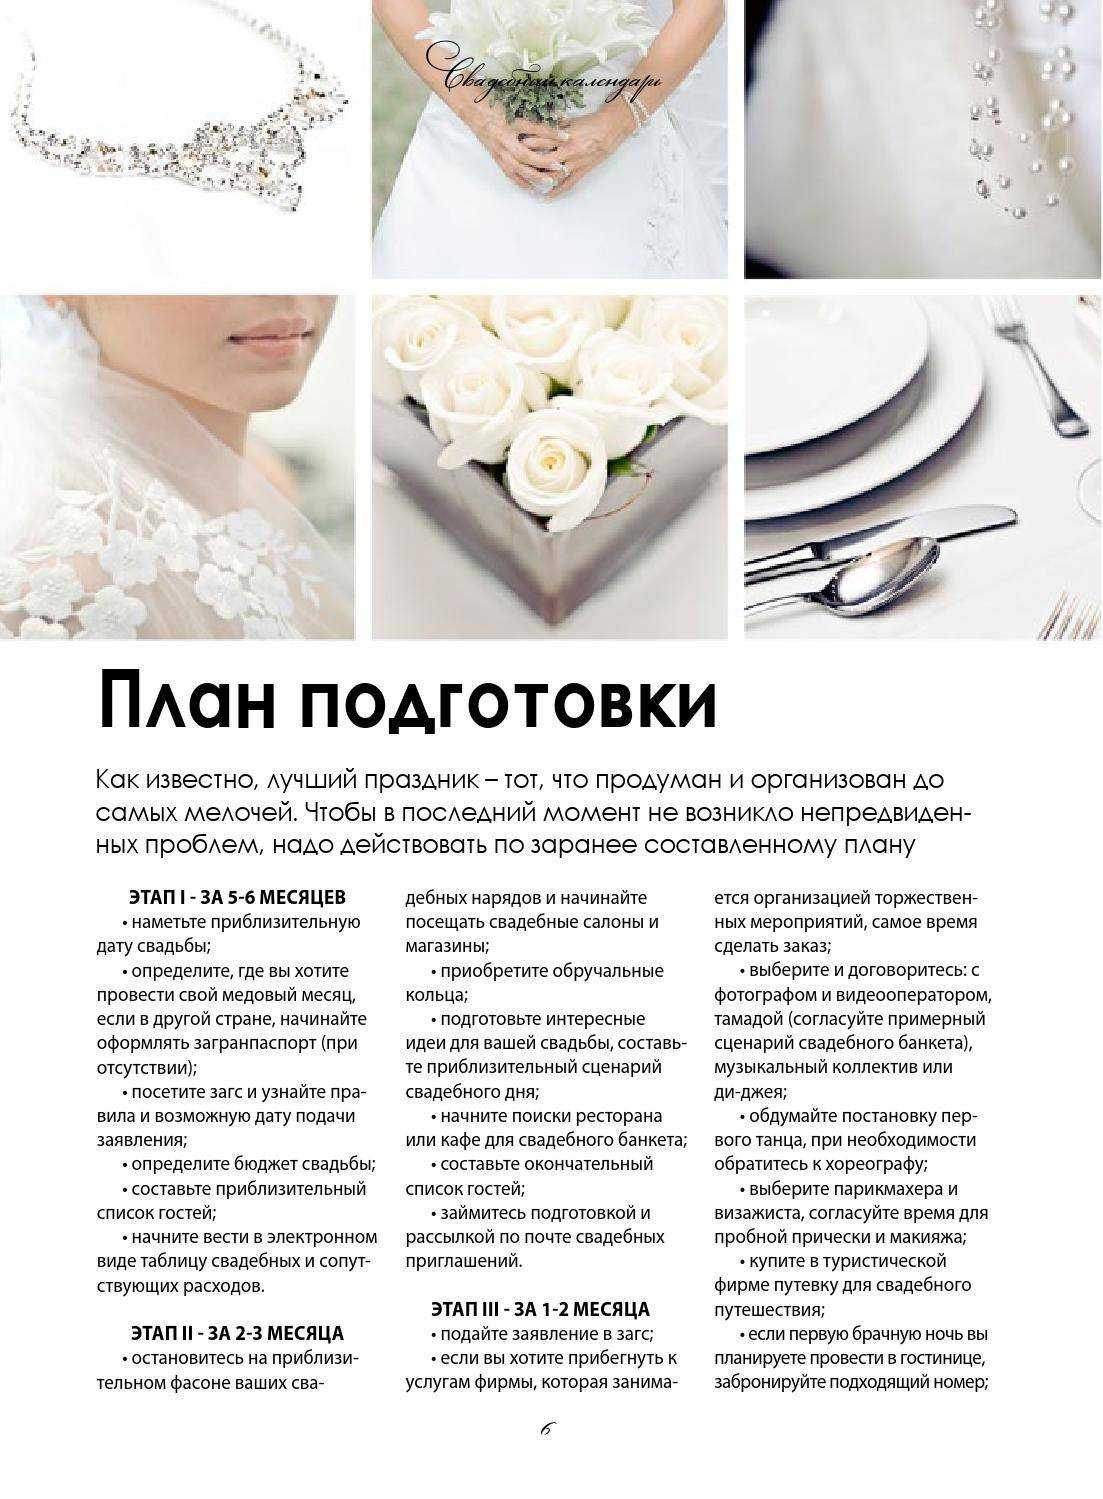 ᐉ идеи для маленькой свадьбы. как сделать скромную свадьбу? советы для бюджетной версия без толпы гостей - 41svadba.ru